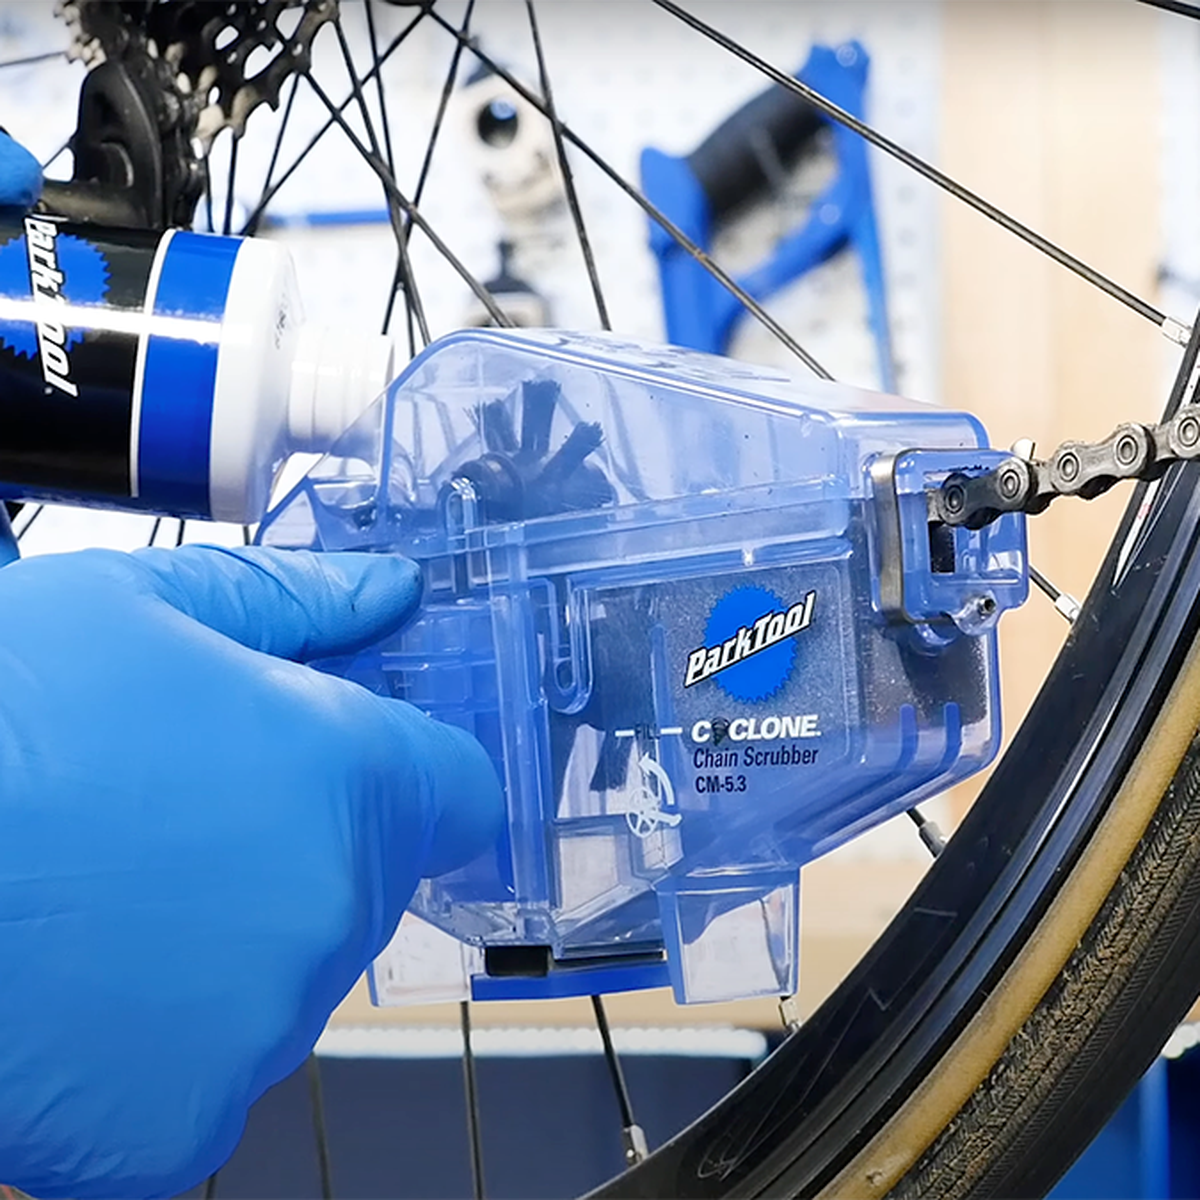 Cómo limpiar la cadena de bicicleta de forma ecológica - Avatar Energía,  blog de Energías Renovables